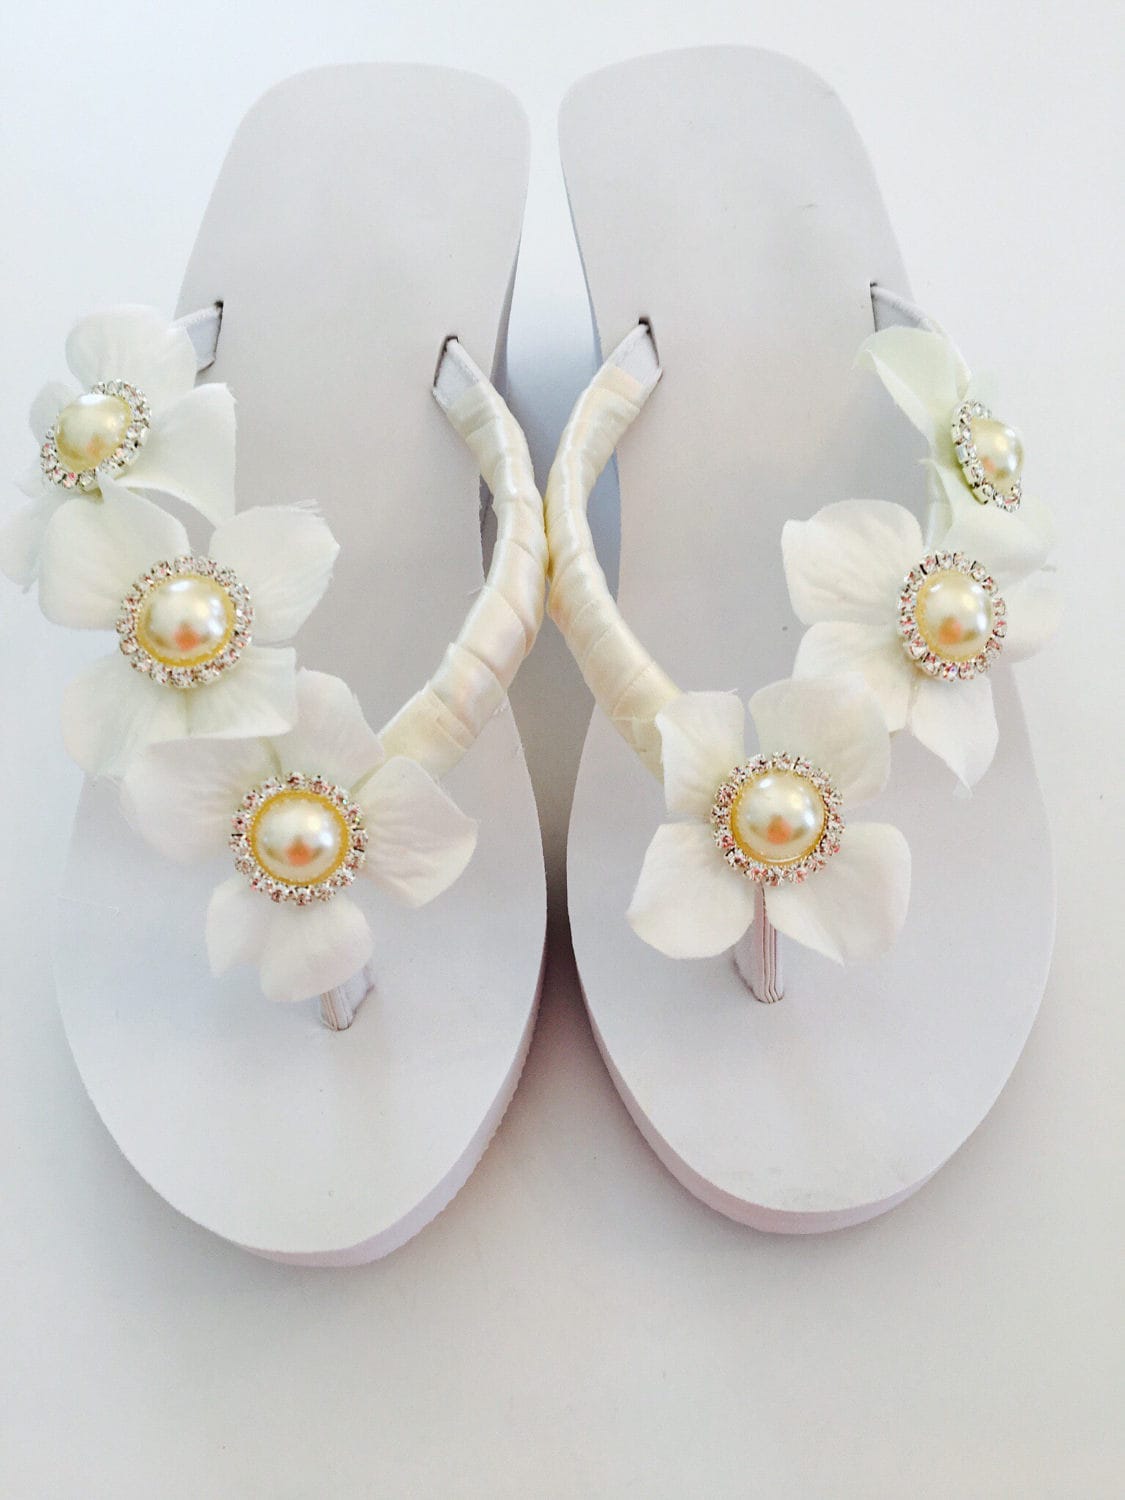 Wedding Flip Flops. Shoes For Bride. Flip Flops For Bride. | Etsy